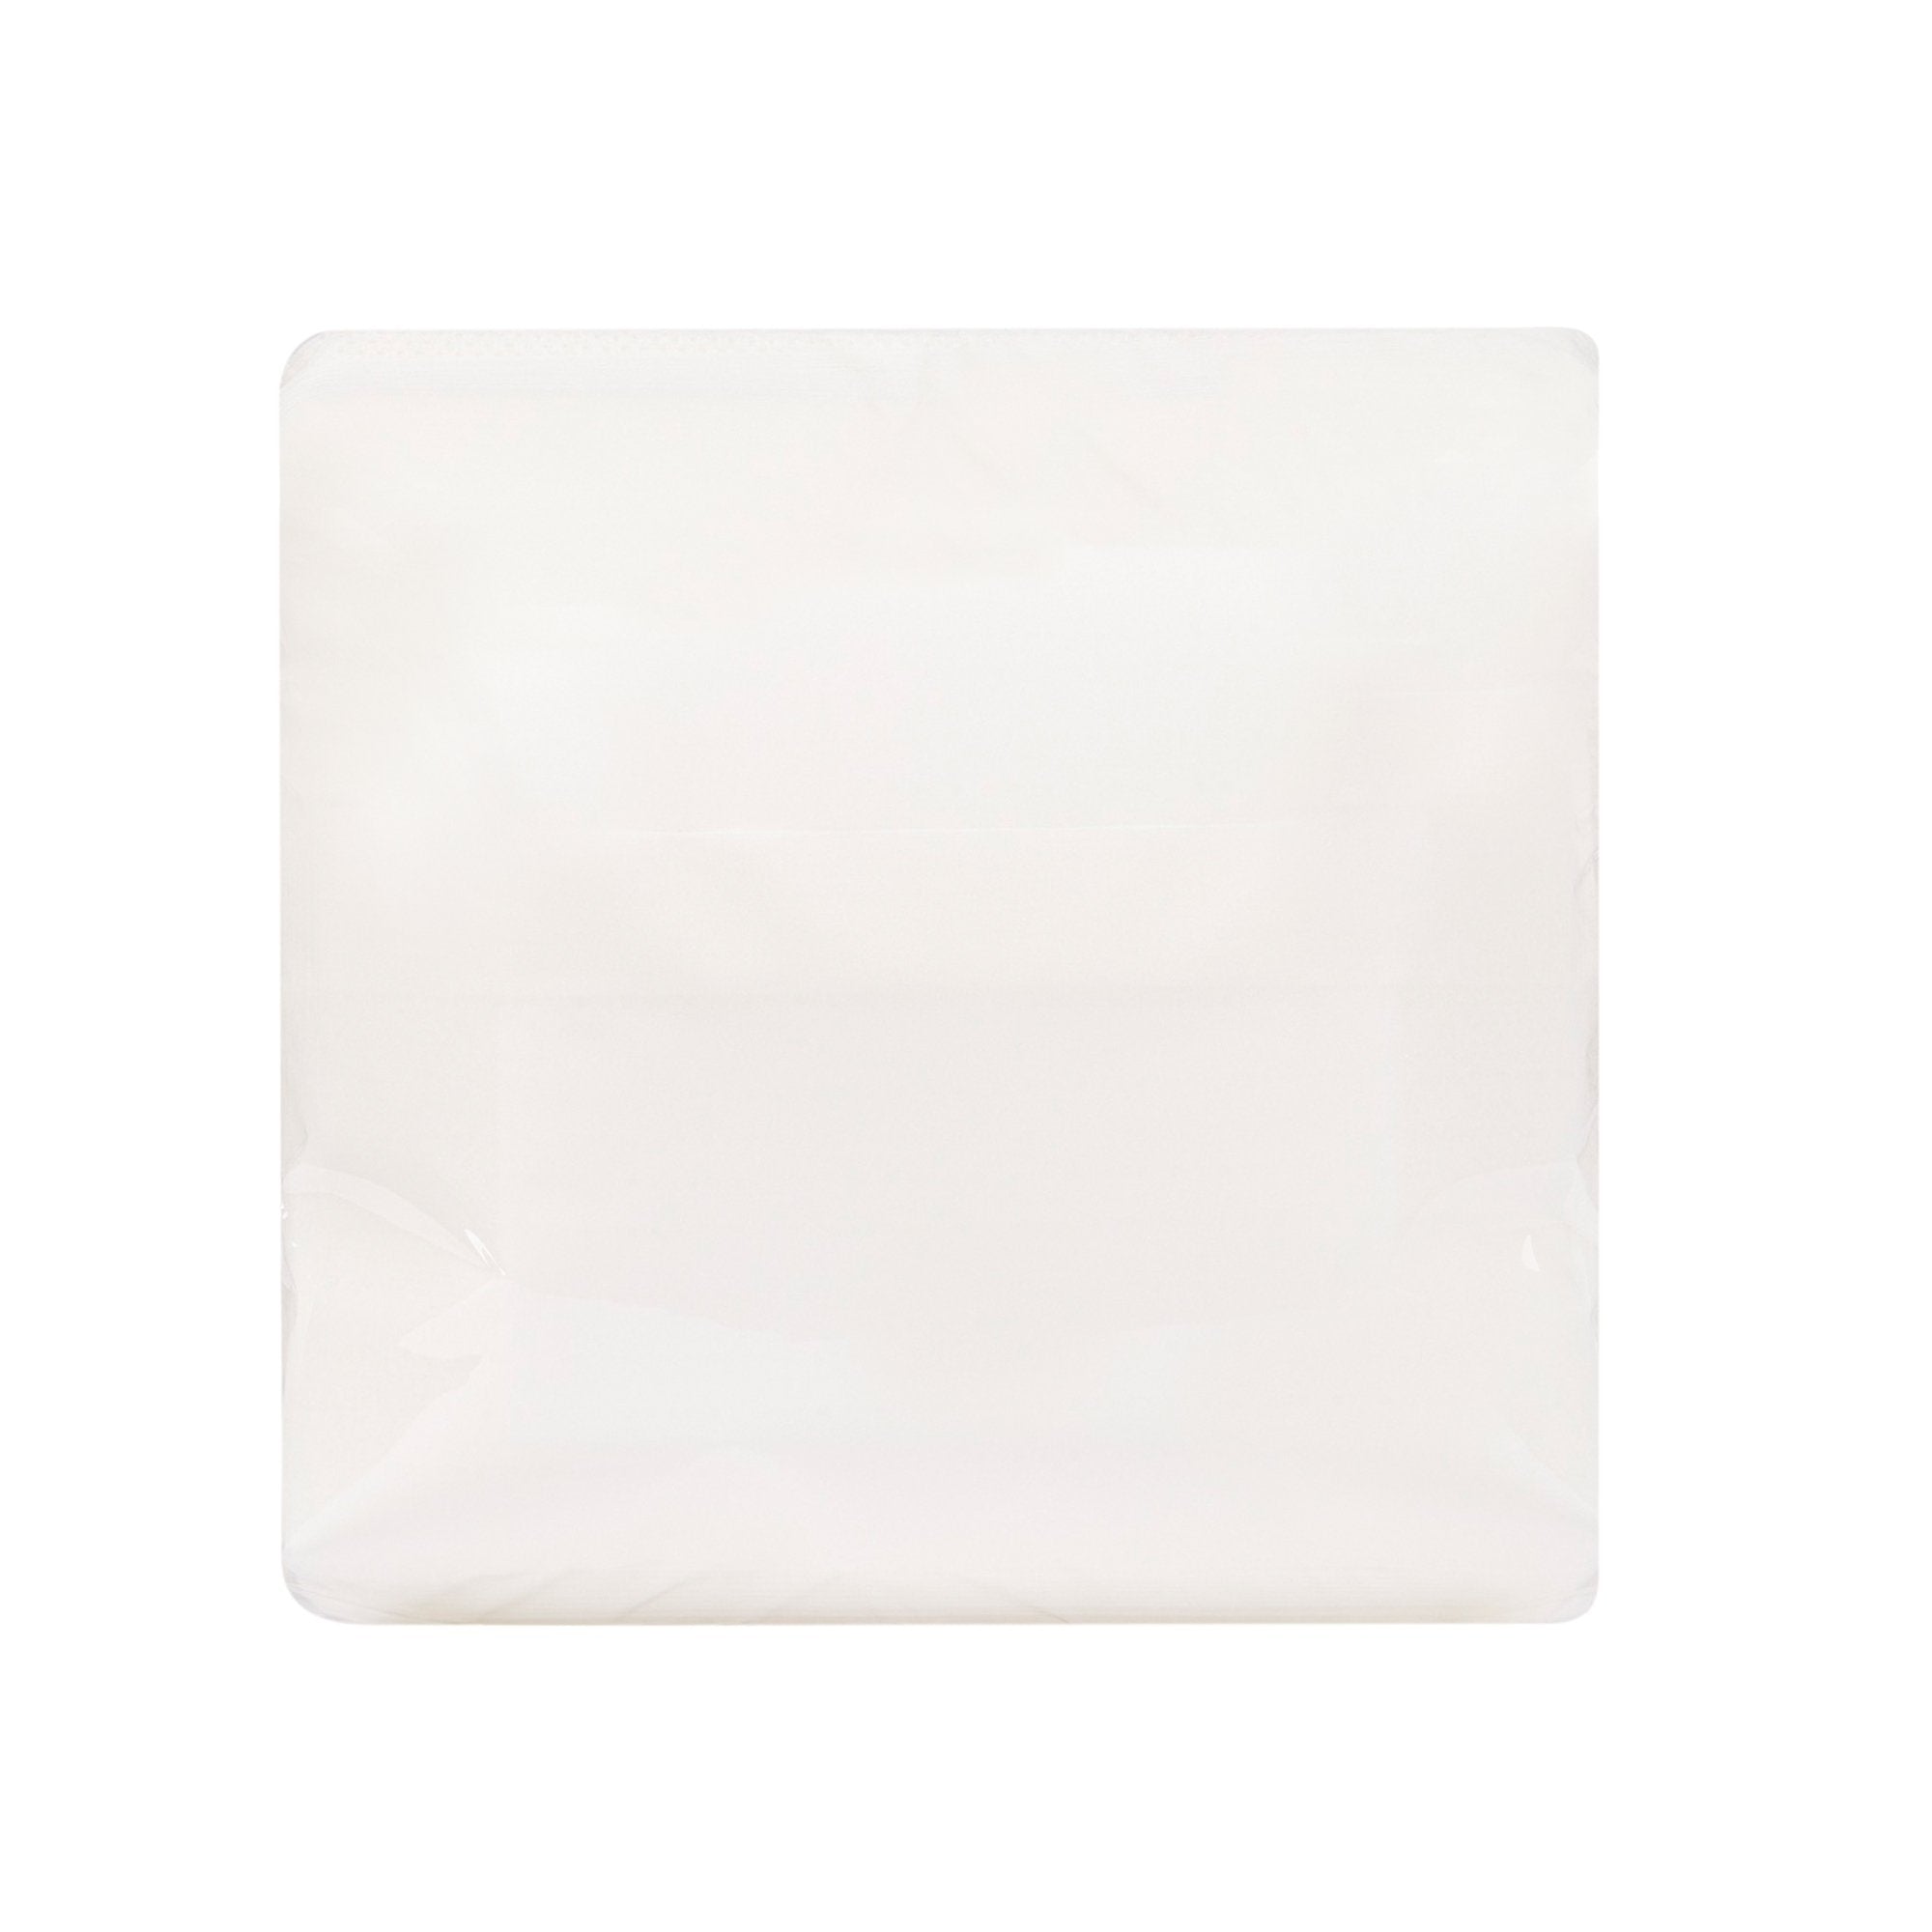 Adhesive Dressing McKesson 6 X 6 Inch Nonwoven Gauze Square White NonSterile